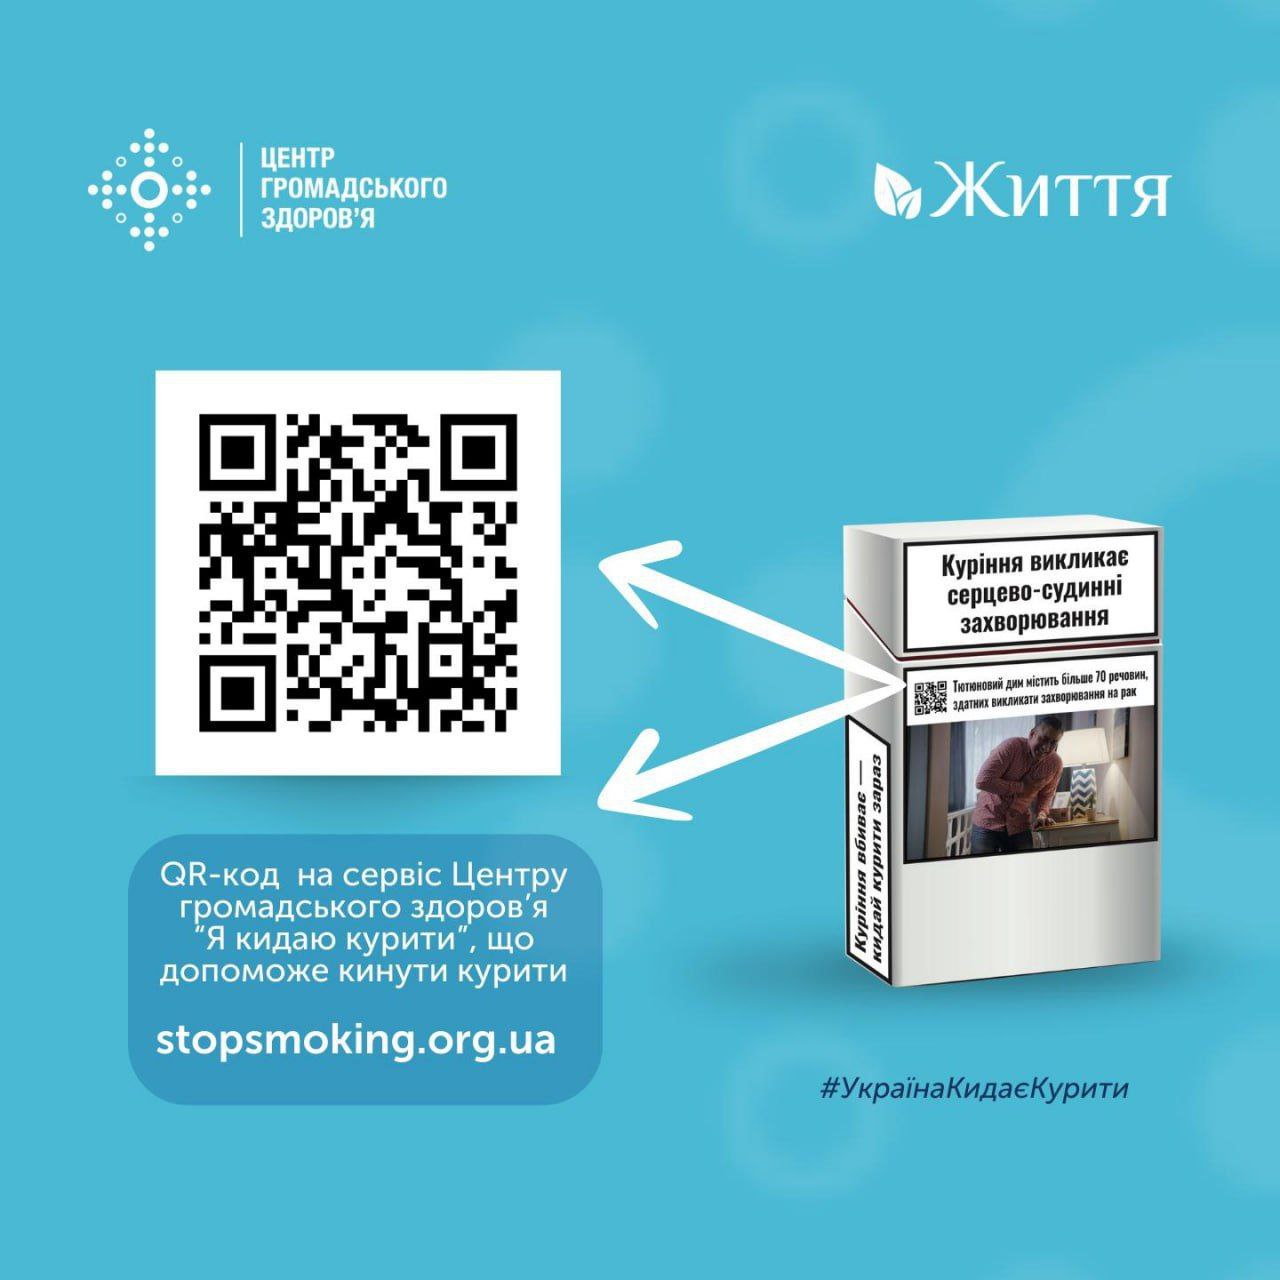 На пачках сигарет в Украине появится QR-код со ссылкой на сервис, который поможет бросить курить